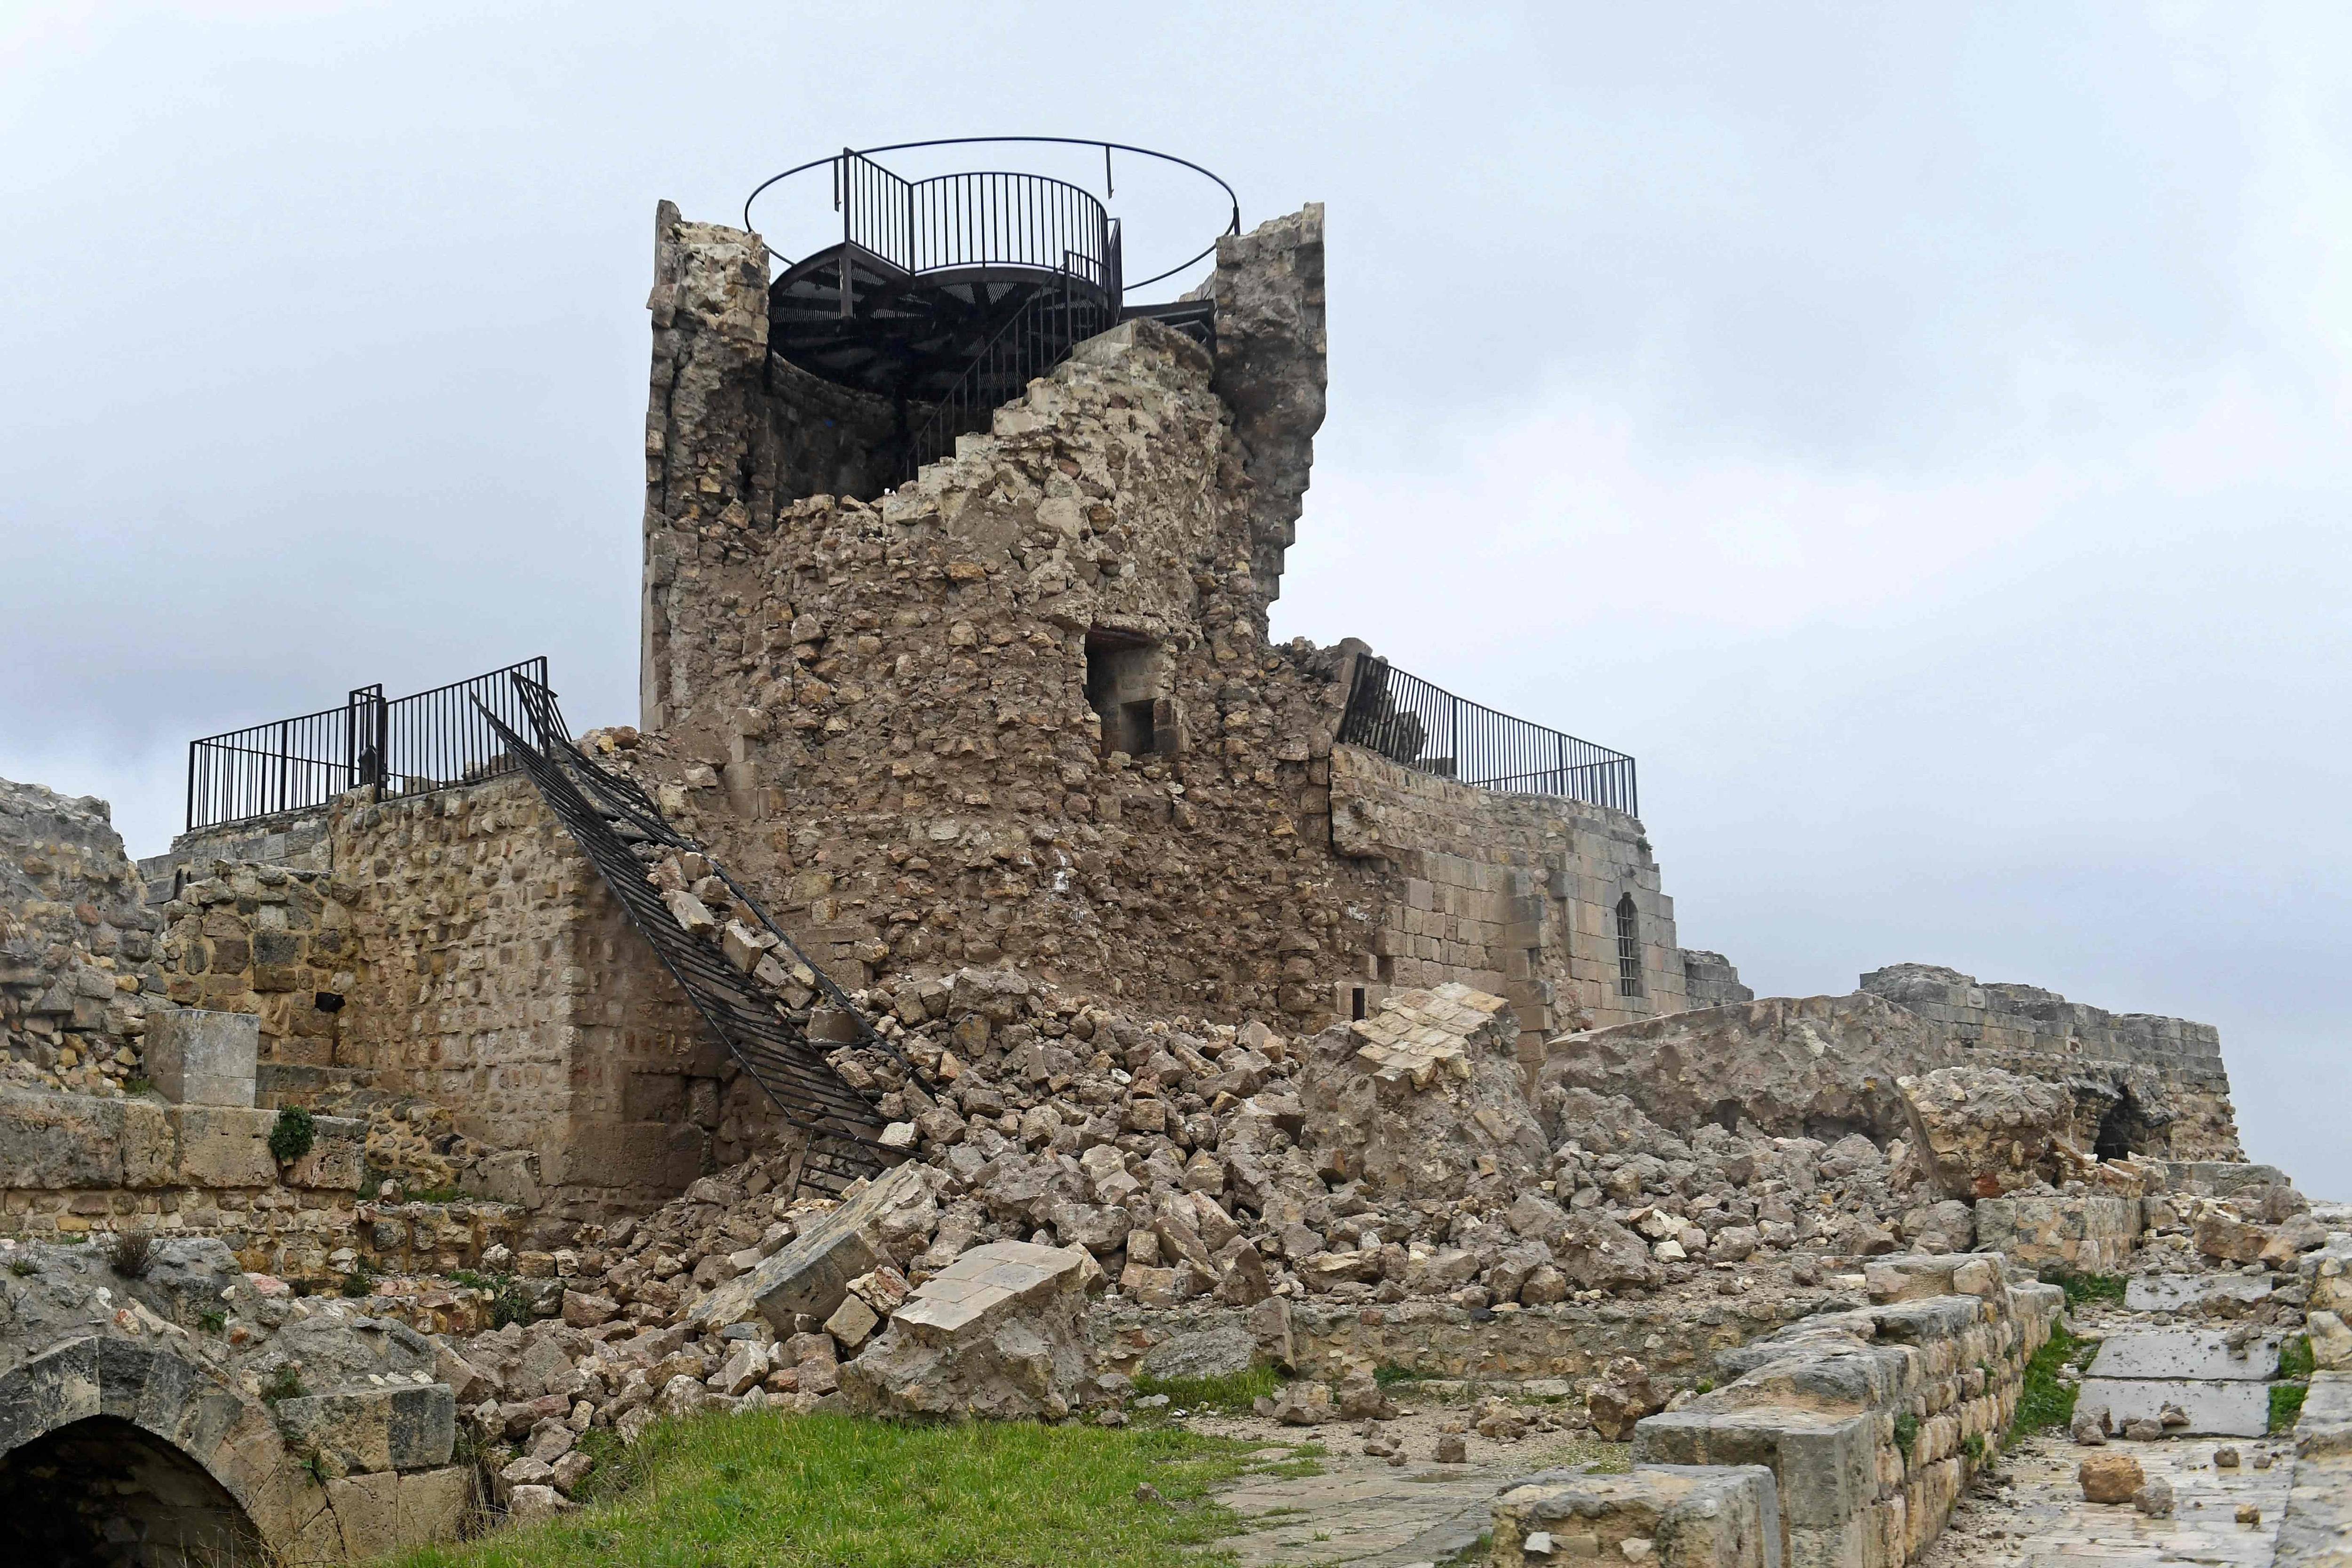 摧毁城堡
:强震损毁诸多古迹<strong></p>
<p>摧毁城堡
</strong>，首要任务是摧毁防止进一步破坏